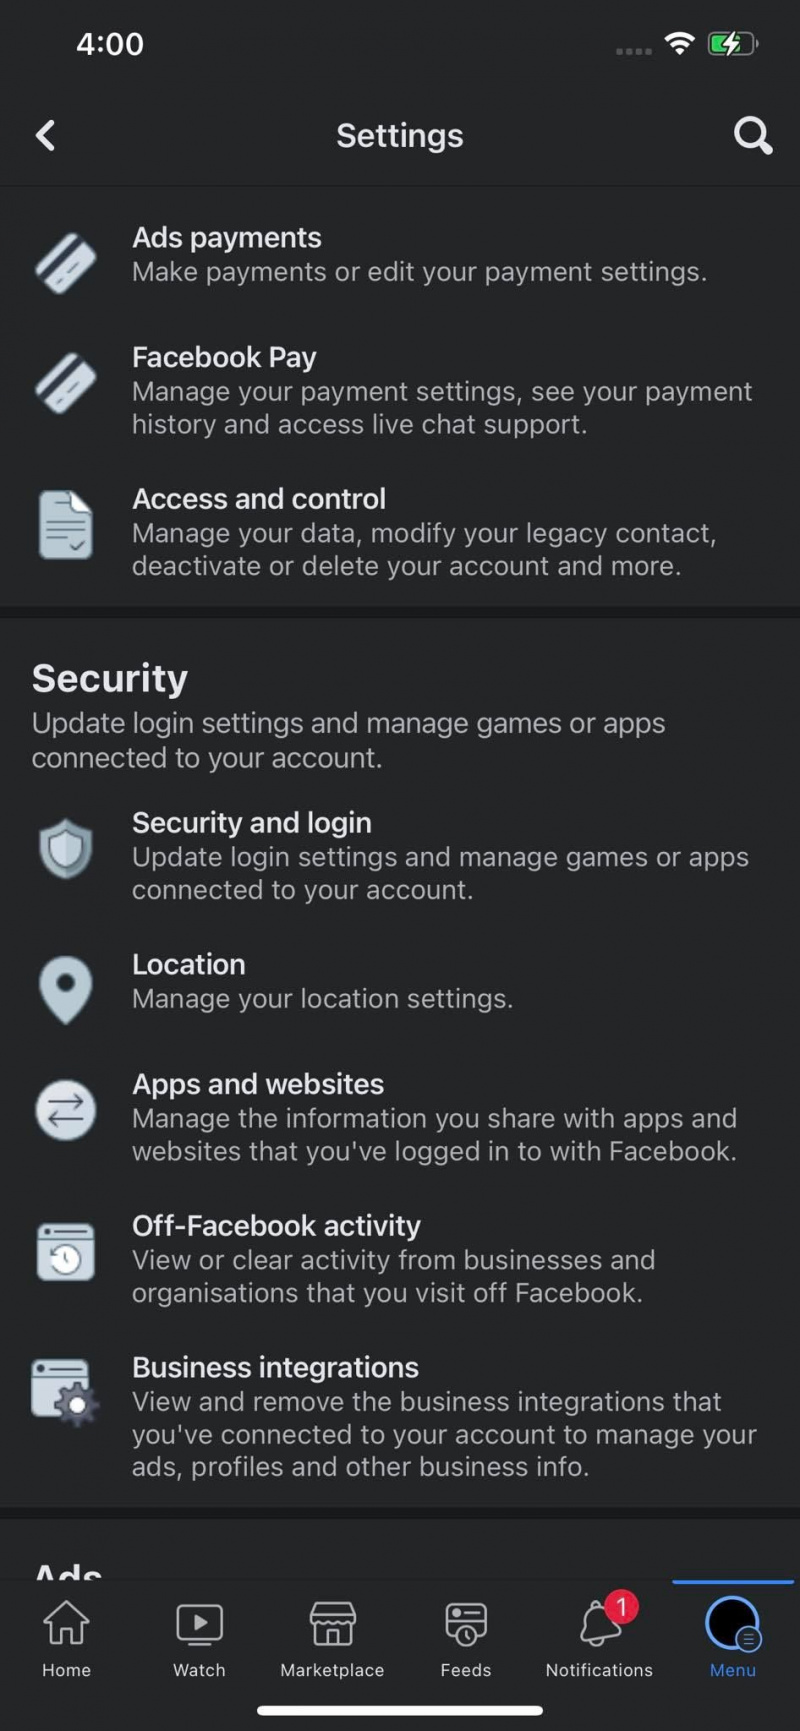   Klicka på Inställningar för appar och webbplatser under fliken Säkerhet för att kontrollera länkade appar i inställningarna för Facebook för iOS